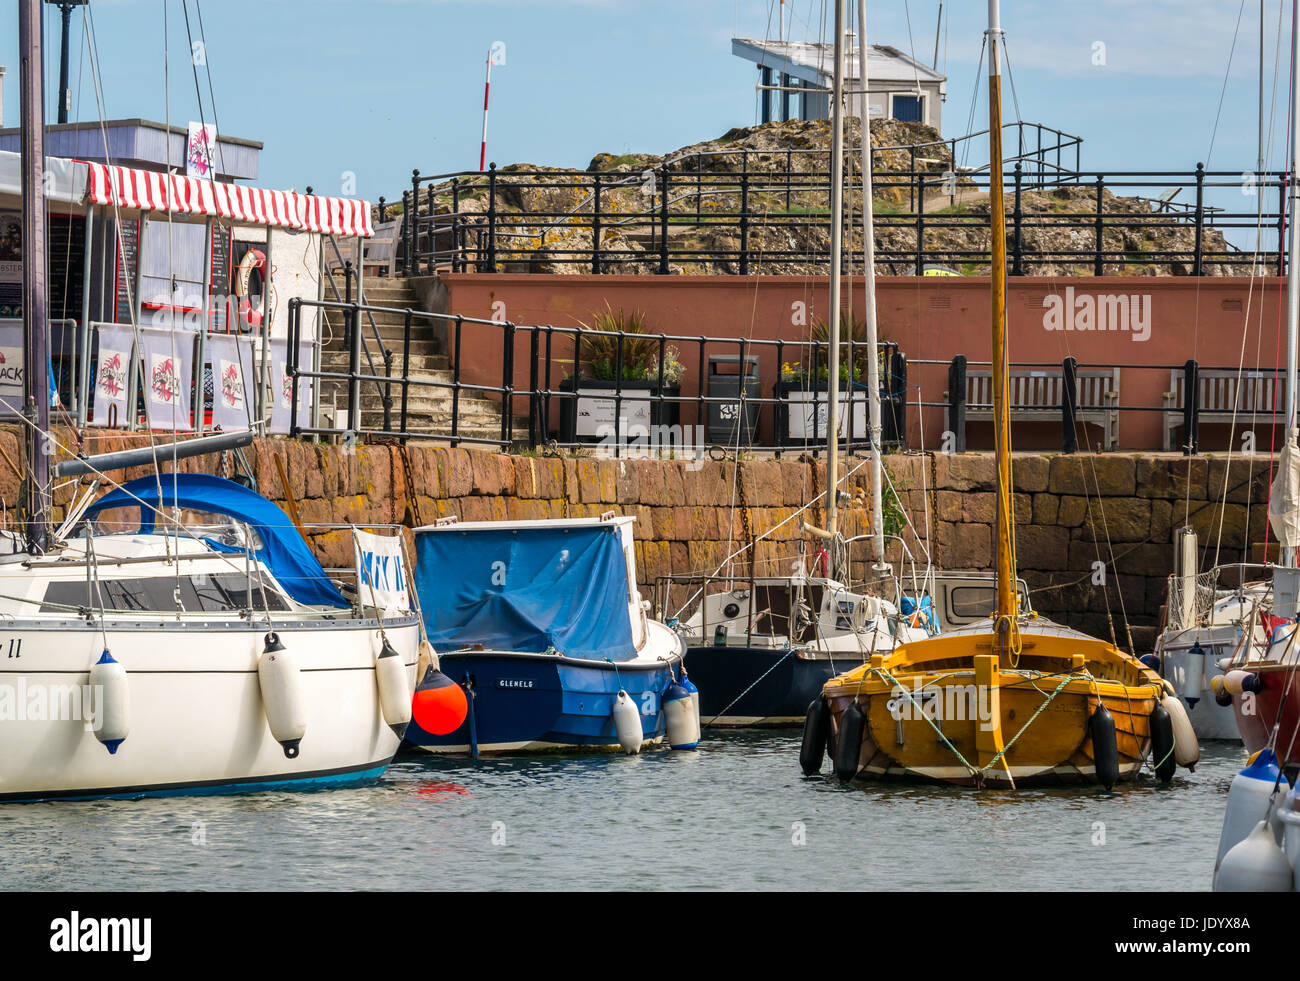 La voile des bateaux amarrés dans le port de North Berwick, East Lothian, Scotland, UK, avec bateau en bois et le homard shack sur le quai côté avec ciel bleu Banque D'Images